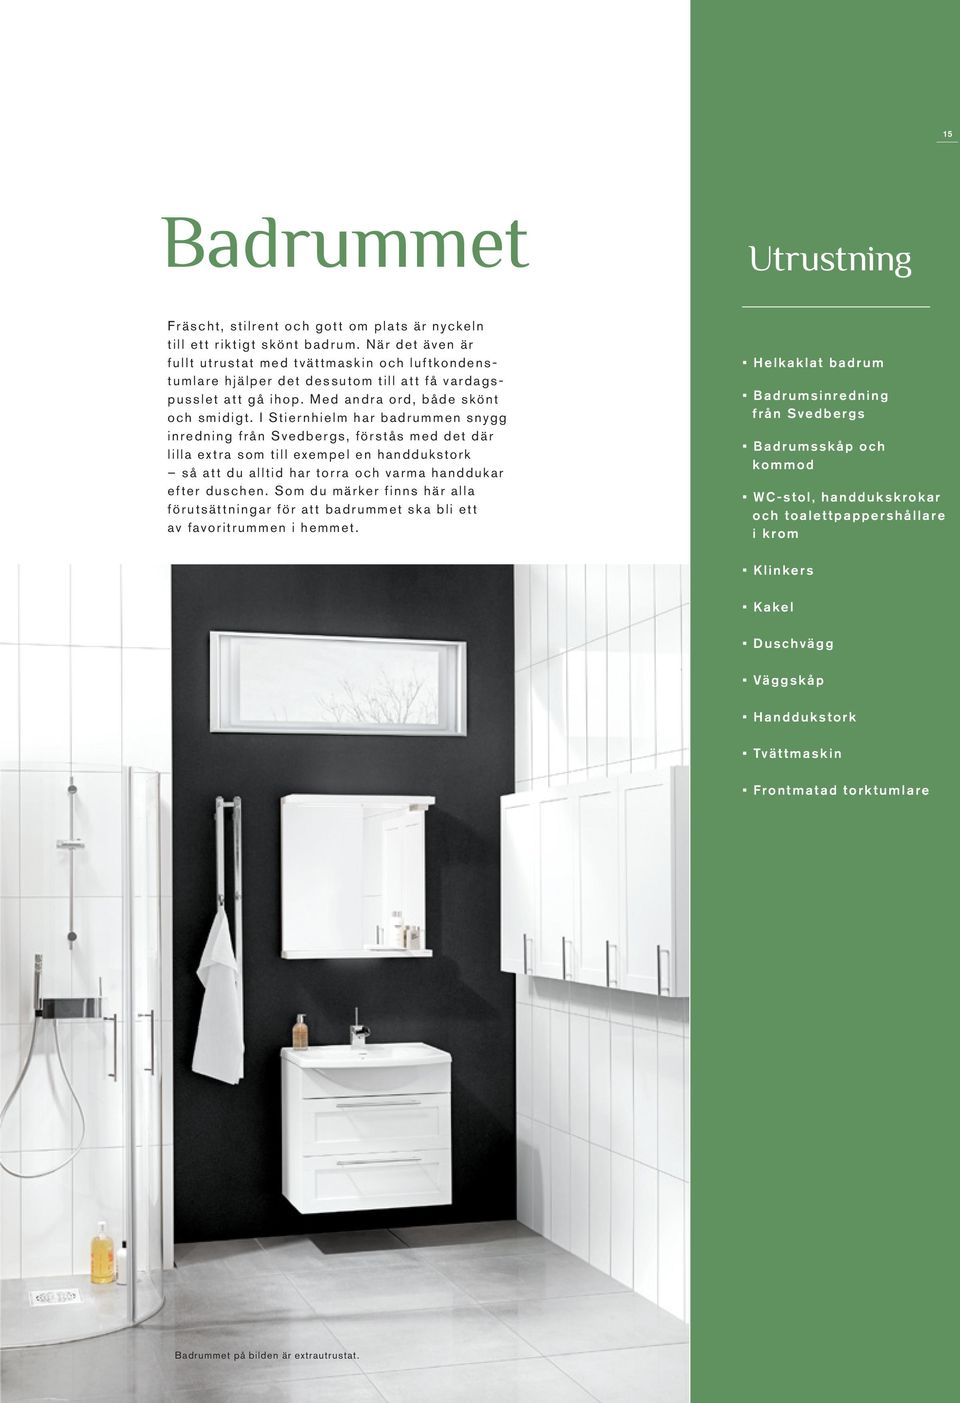 I Stiernhielm har badrummen snygg inredning från Svedbergs, förstås med det där lilla extra som till exempel en handdukstork så att du alltid har torra och varma handdukar efter duschen.